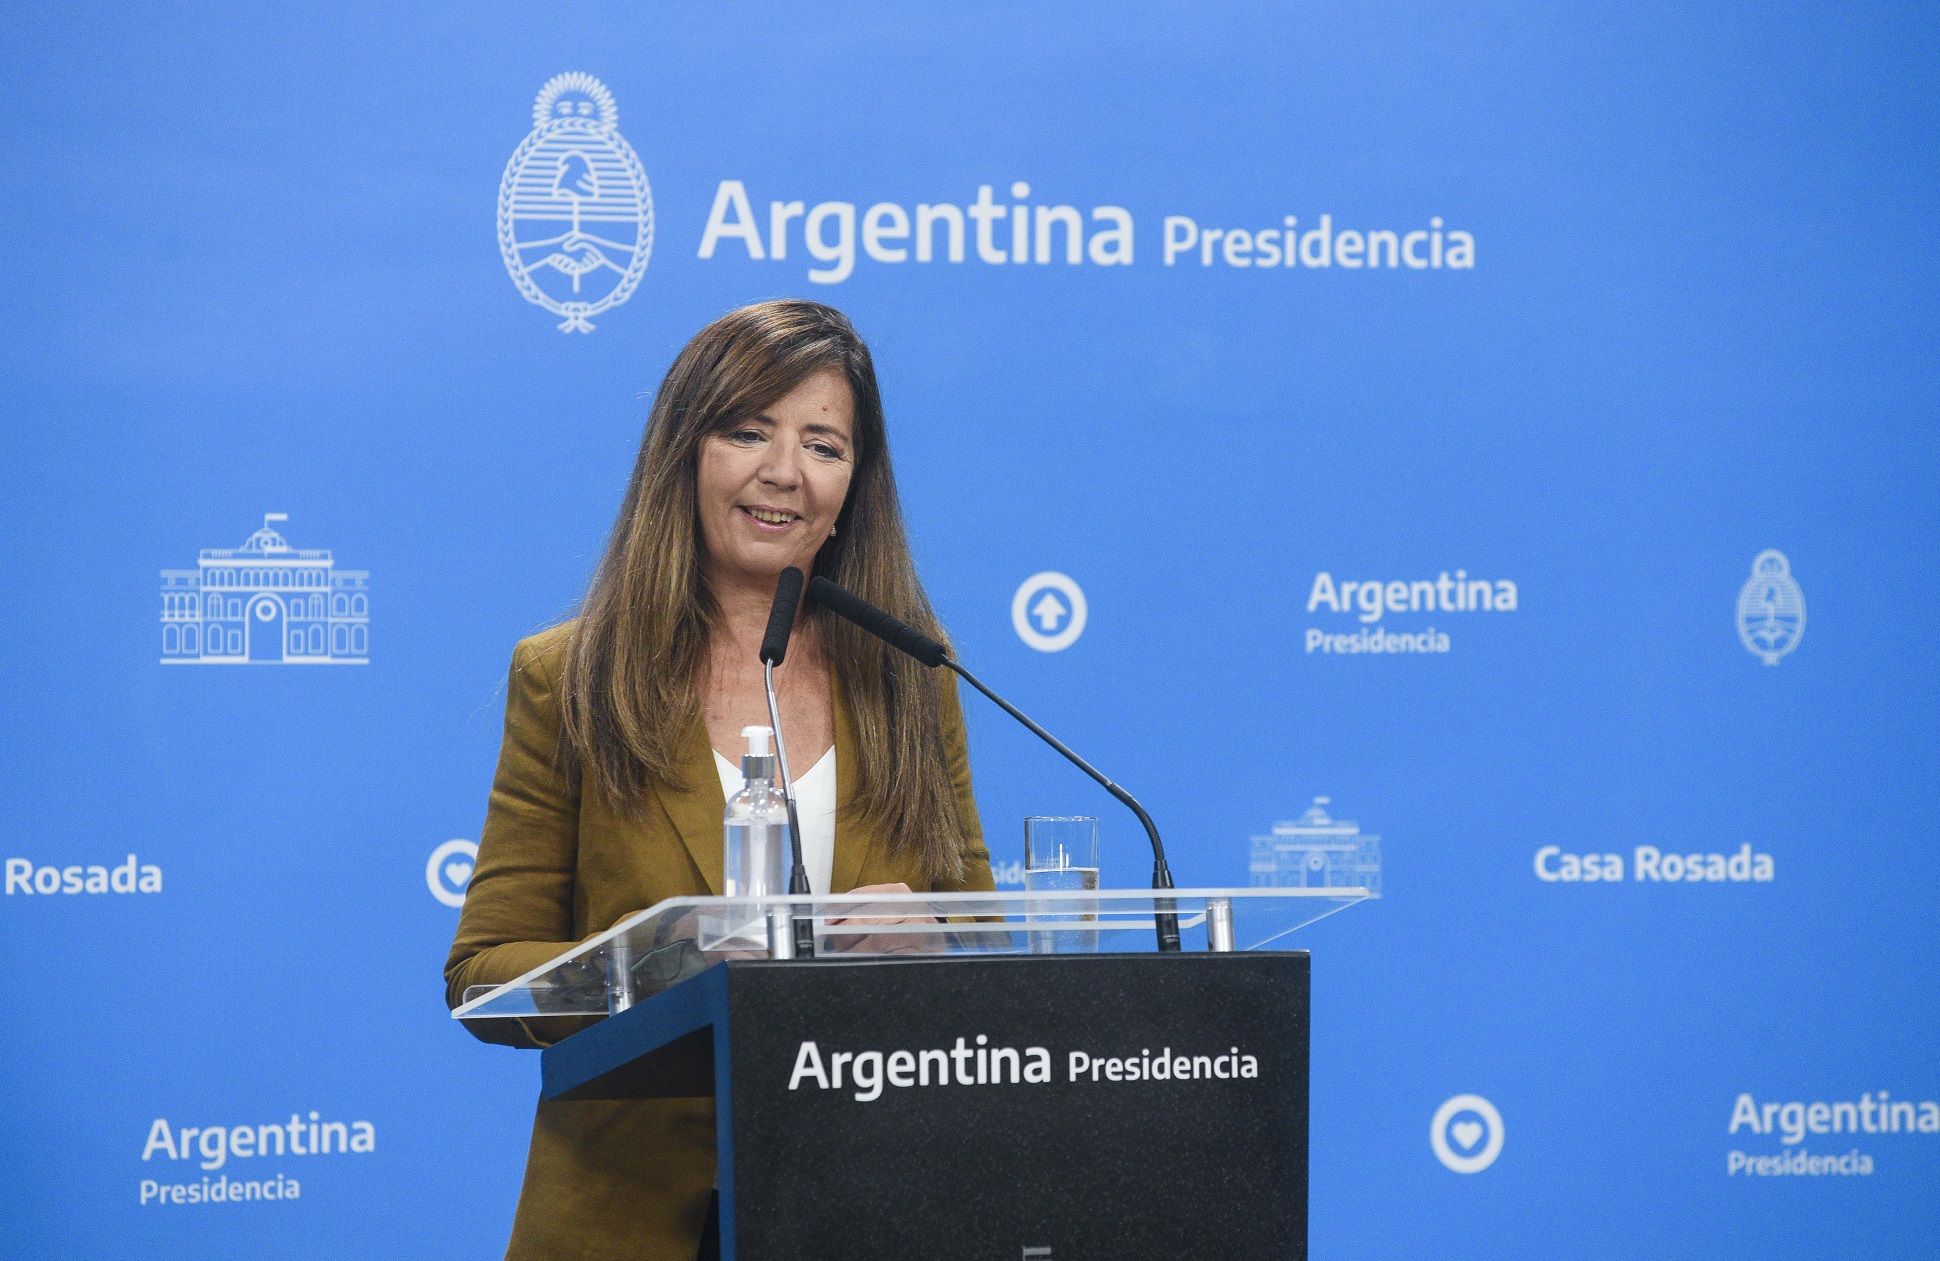 La portavoz Gabriela Cerruti convocó a las familias argentinas a celebrar mañana en la Plaza de Mayo la “fiesta de la democracia”